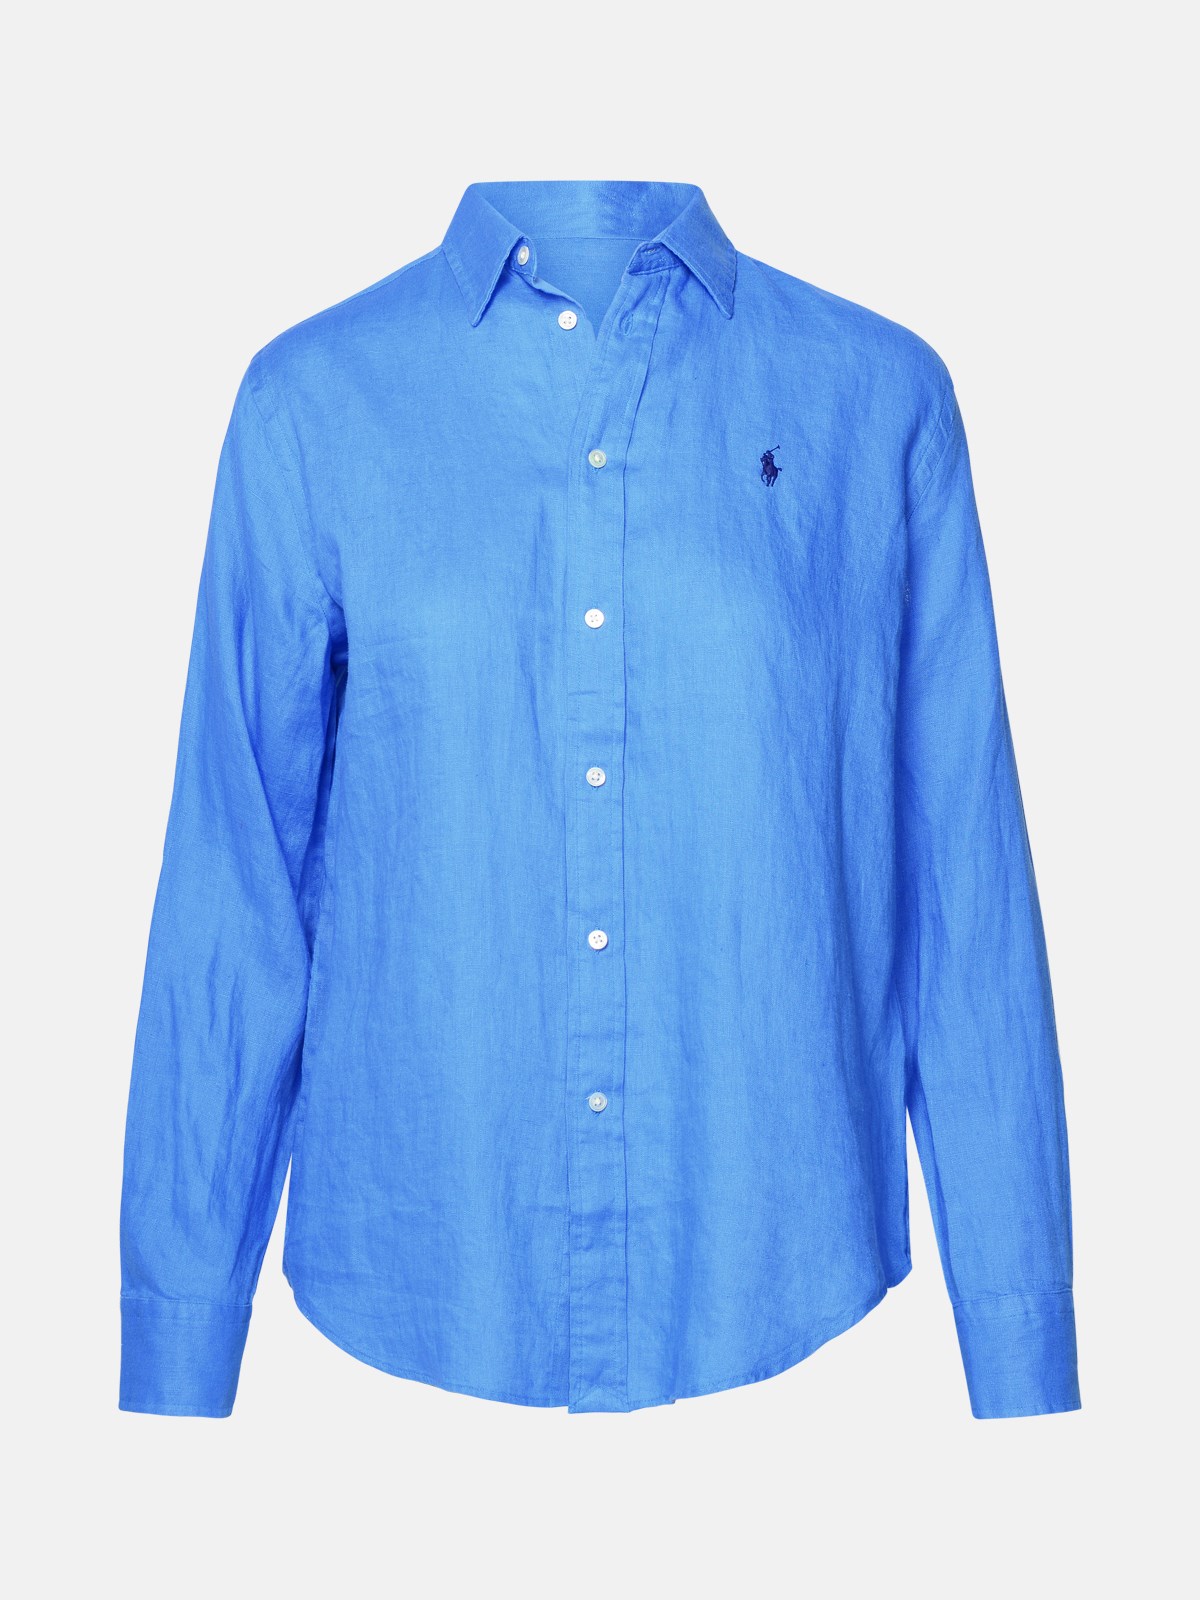 Polo Ralph Lauren Light Blue Linen Shirt